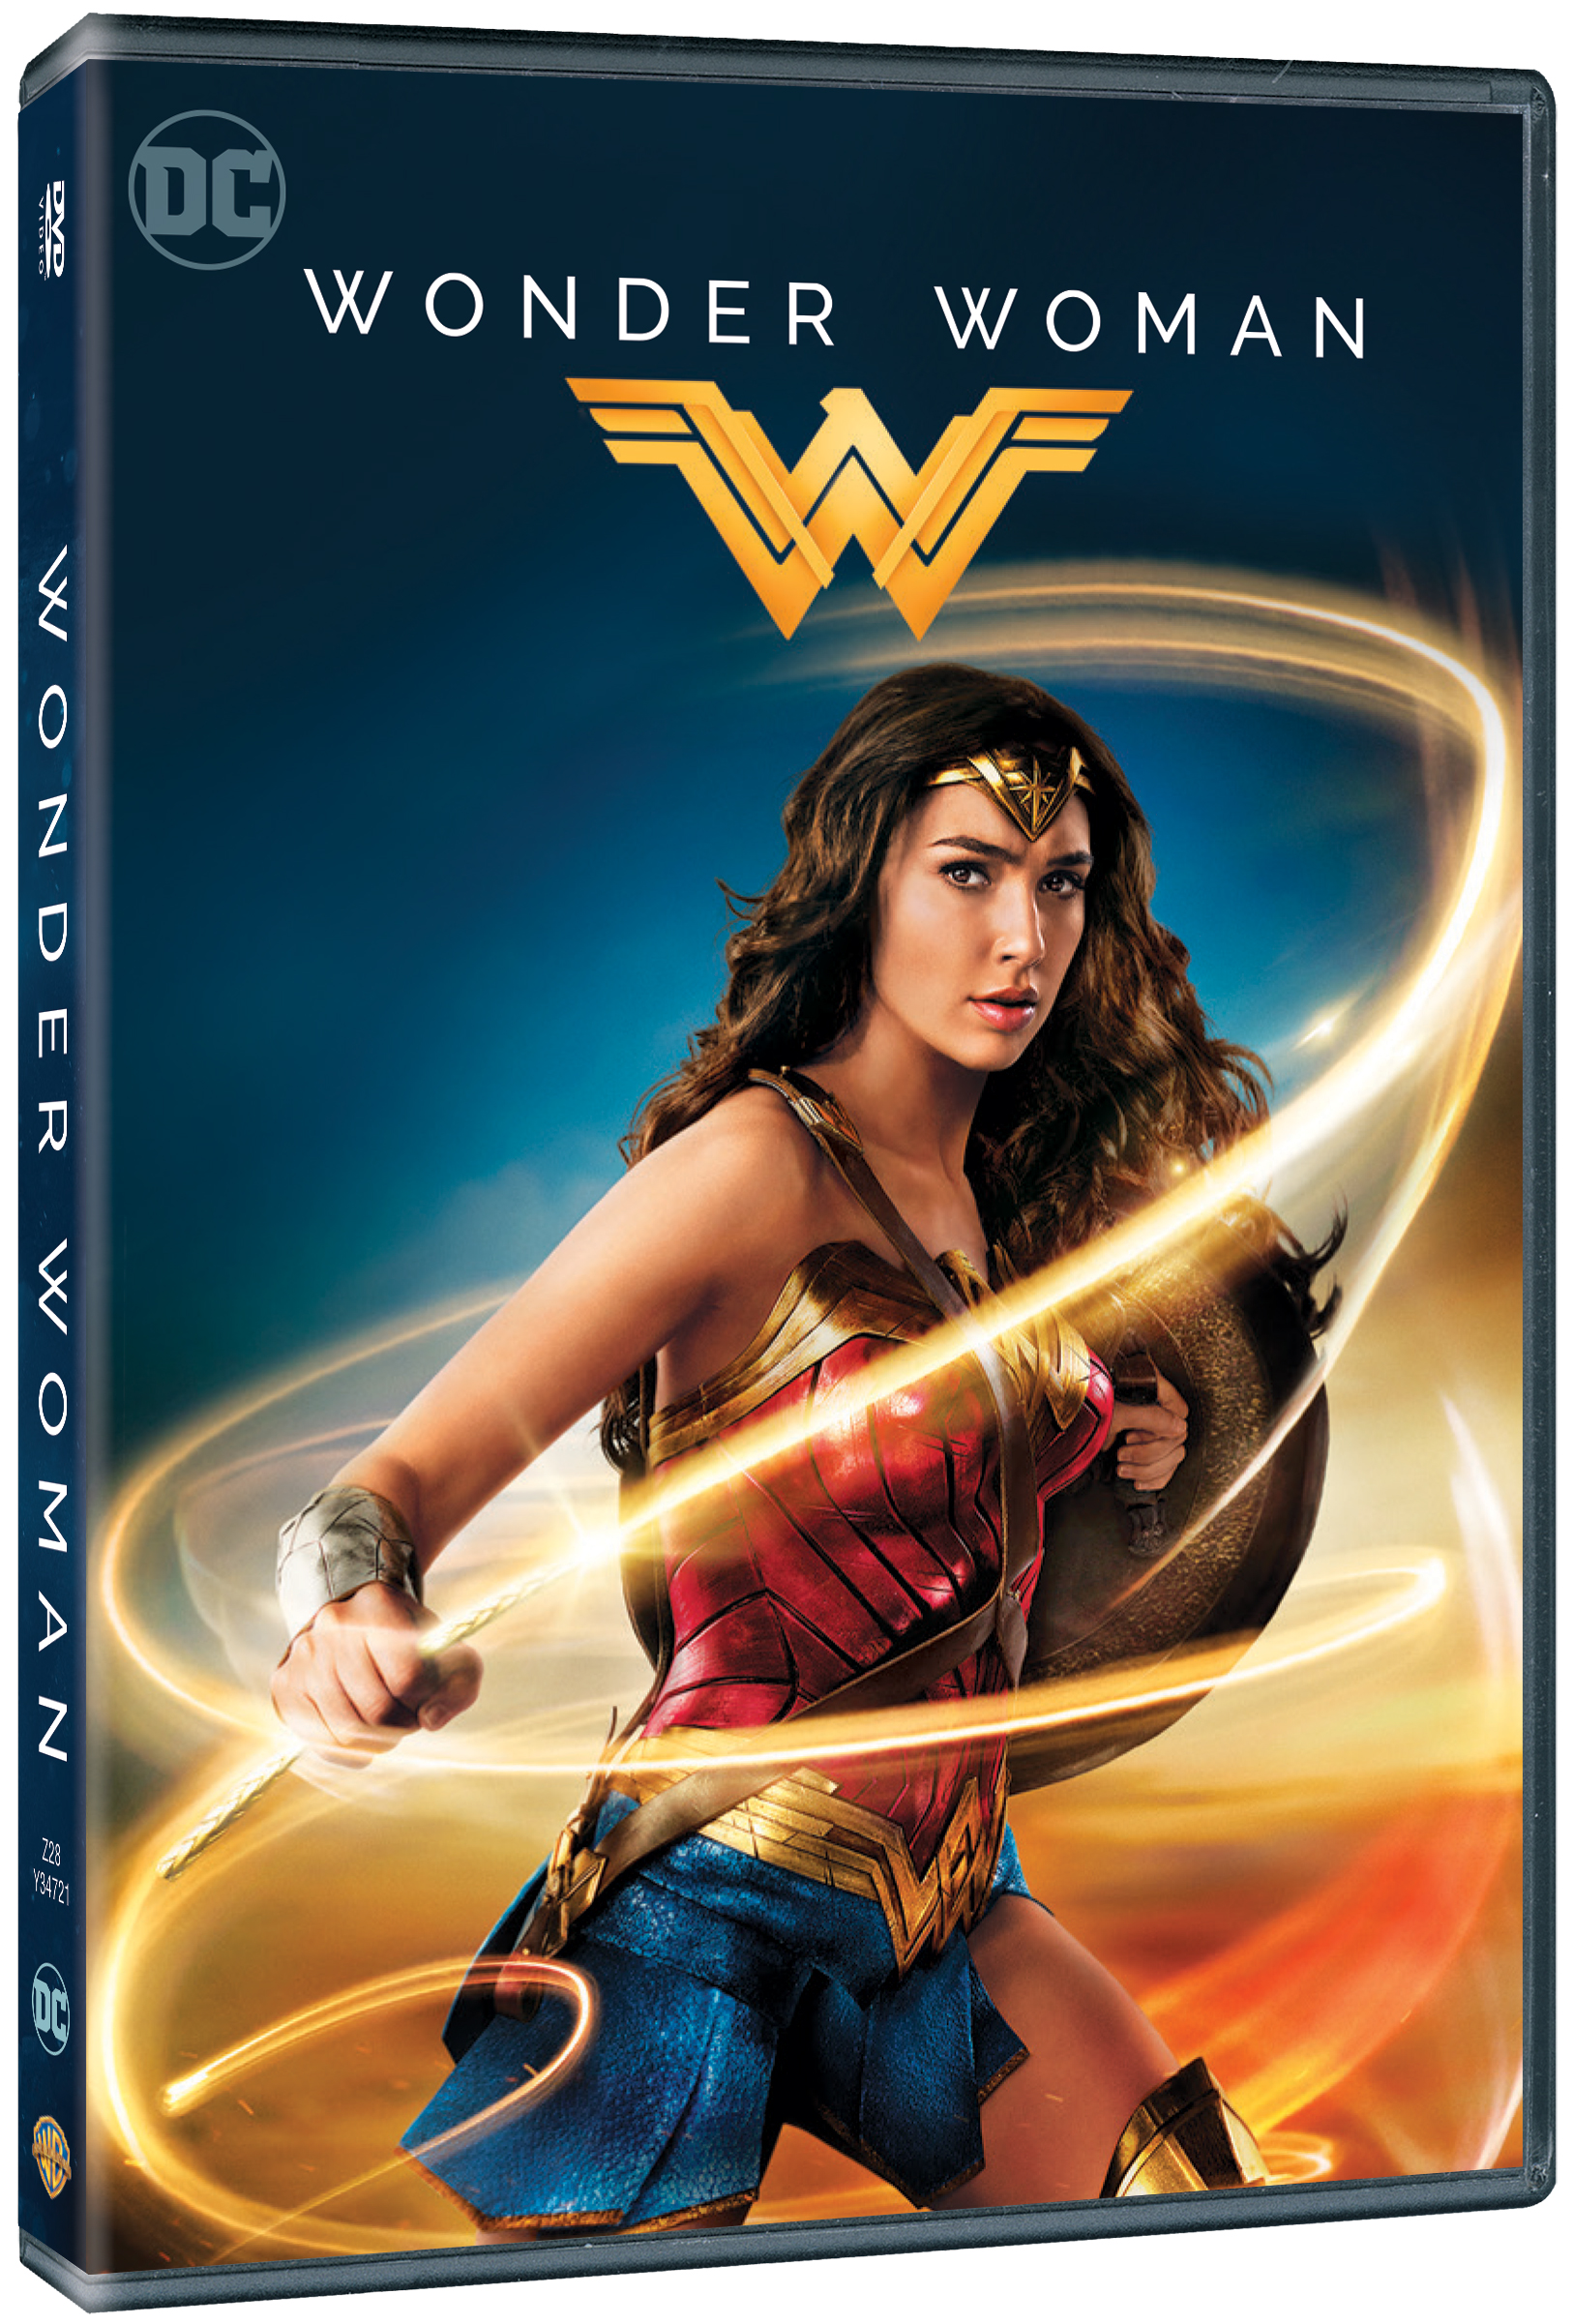 Wonder Woman / Wonder Woman | Patty Jenkins image2